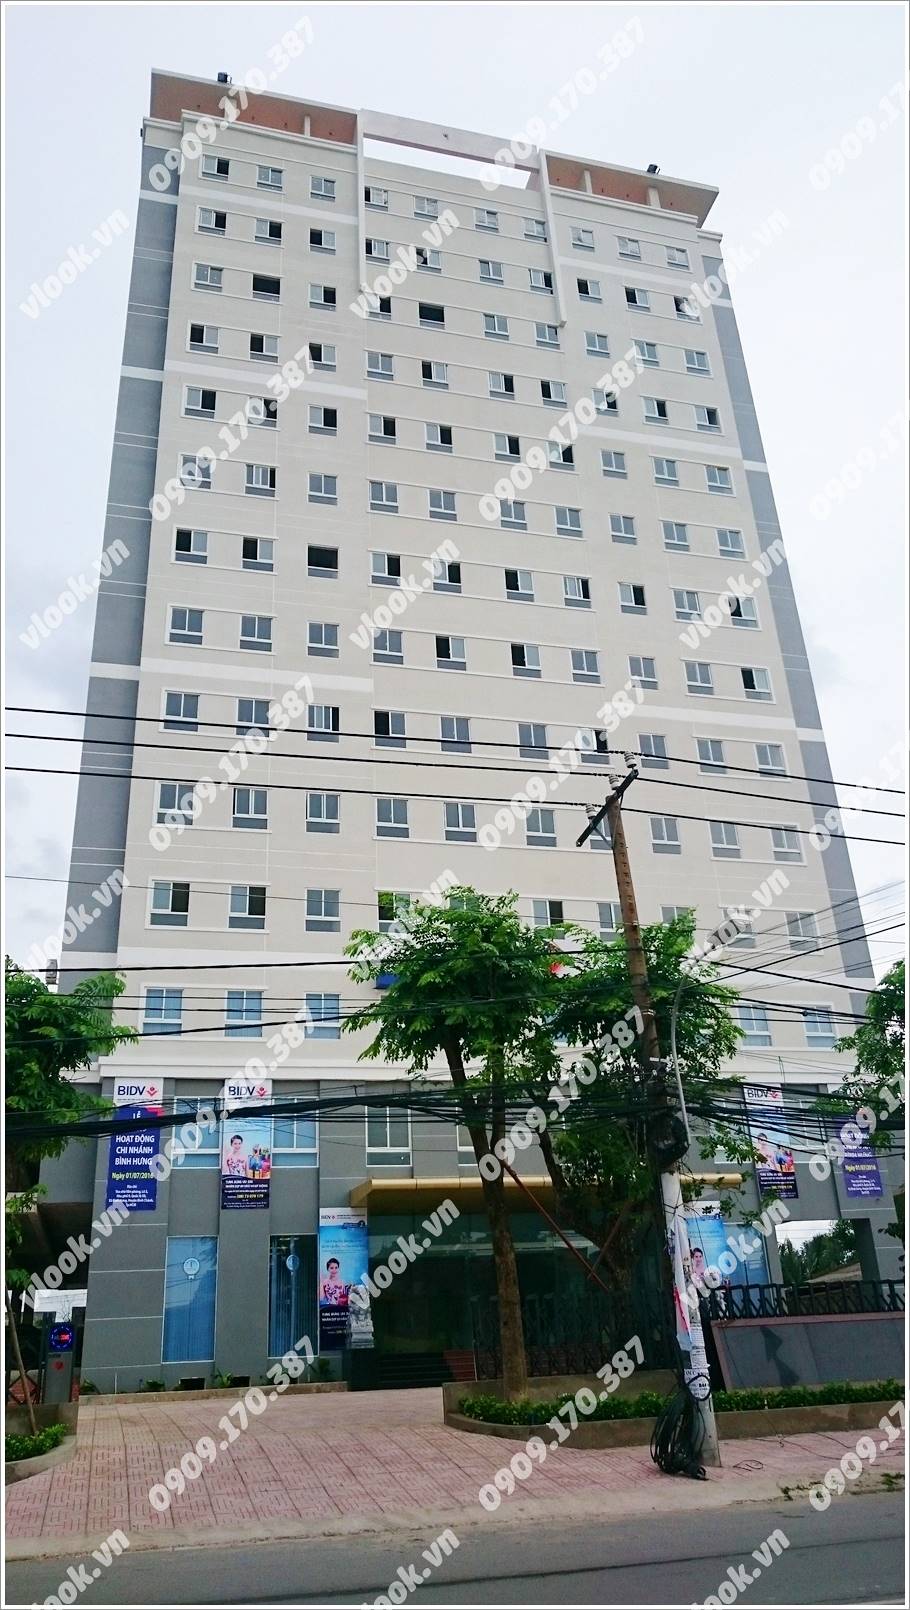 Cao ốc văn phòng cho thuê 194 South Tower Quốc Lộ 50 Xã Bình Hưng Huyện Bình Chánh TP.HCM - vlook.vn